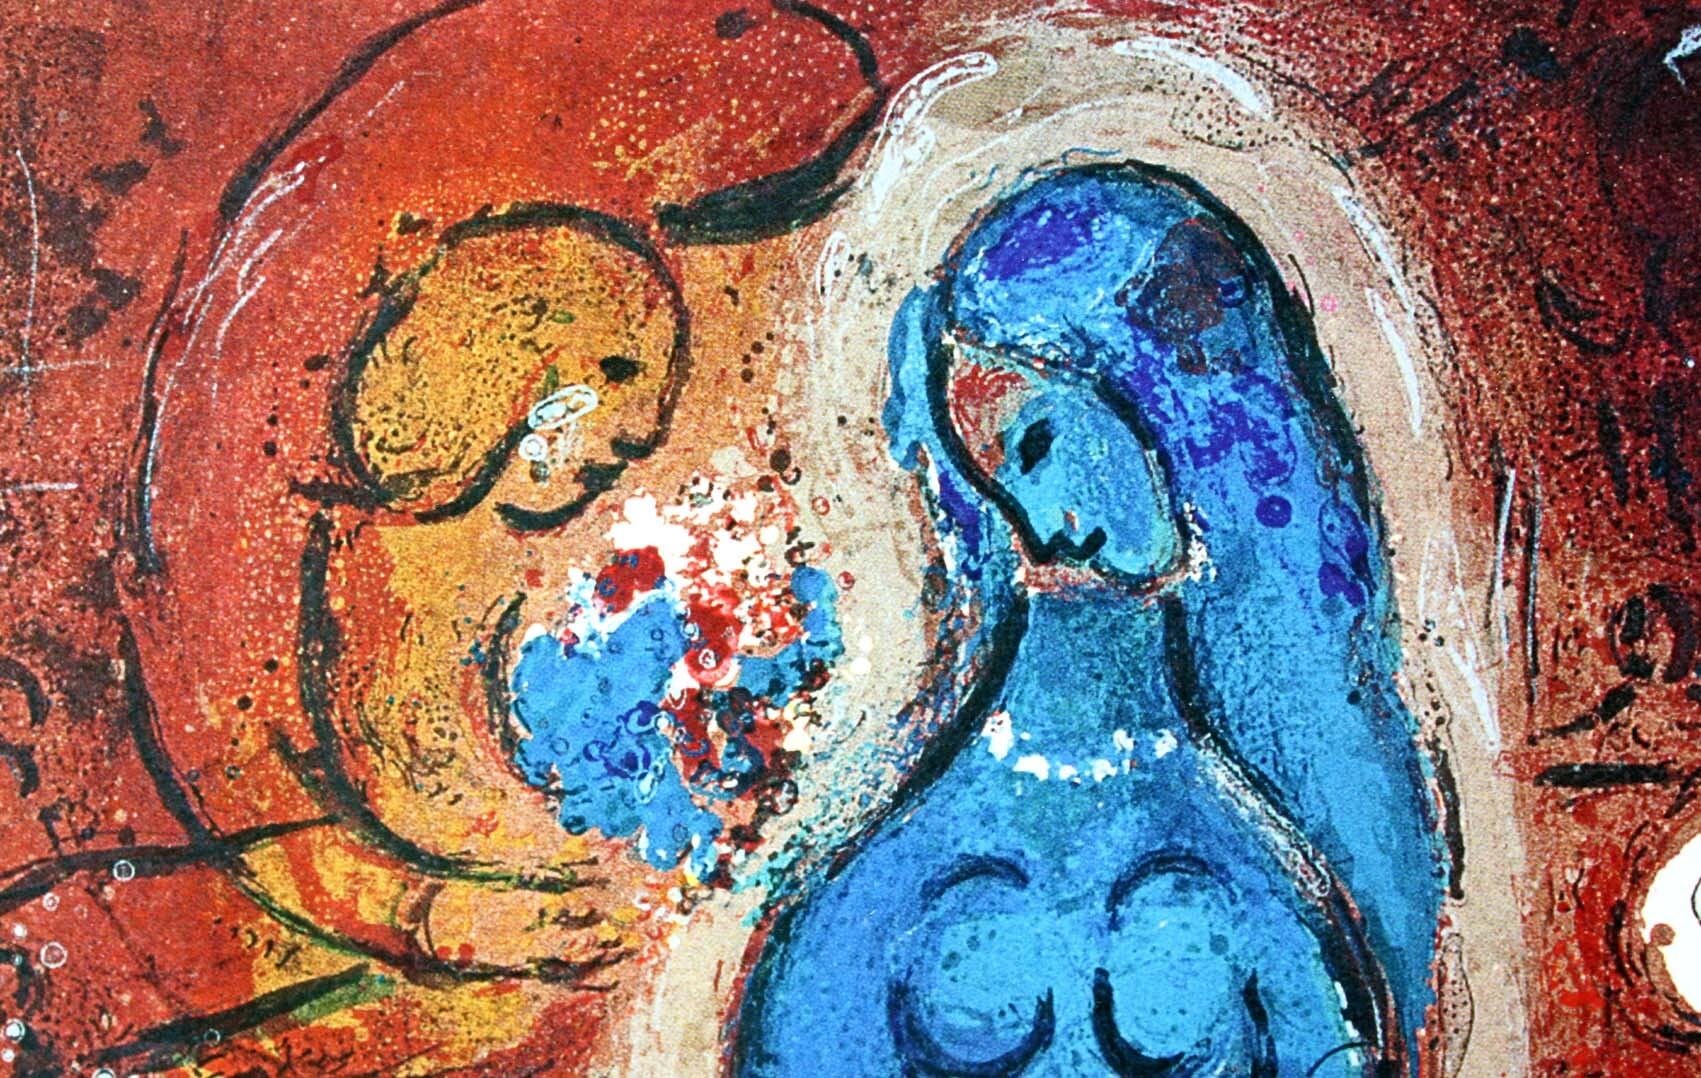 マルク・シャガール絵画「サーカス」作品証明書・展示用フック・限定375部エディション付複製画ジークレ